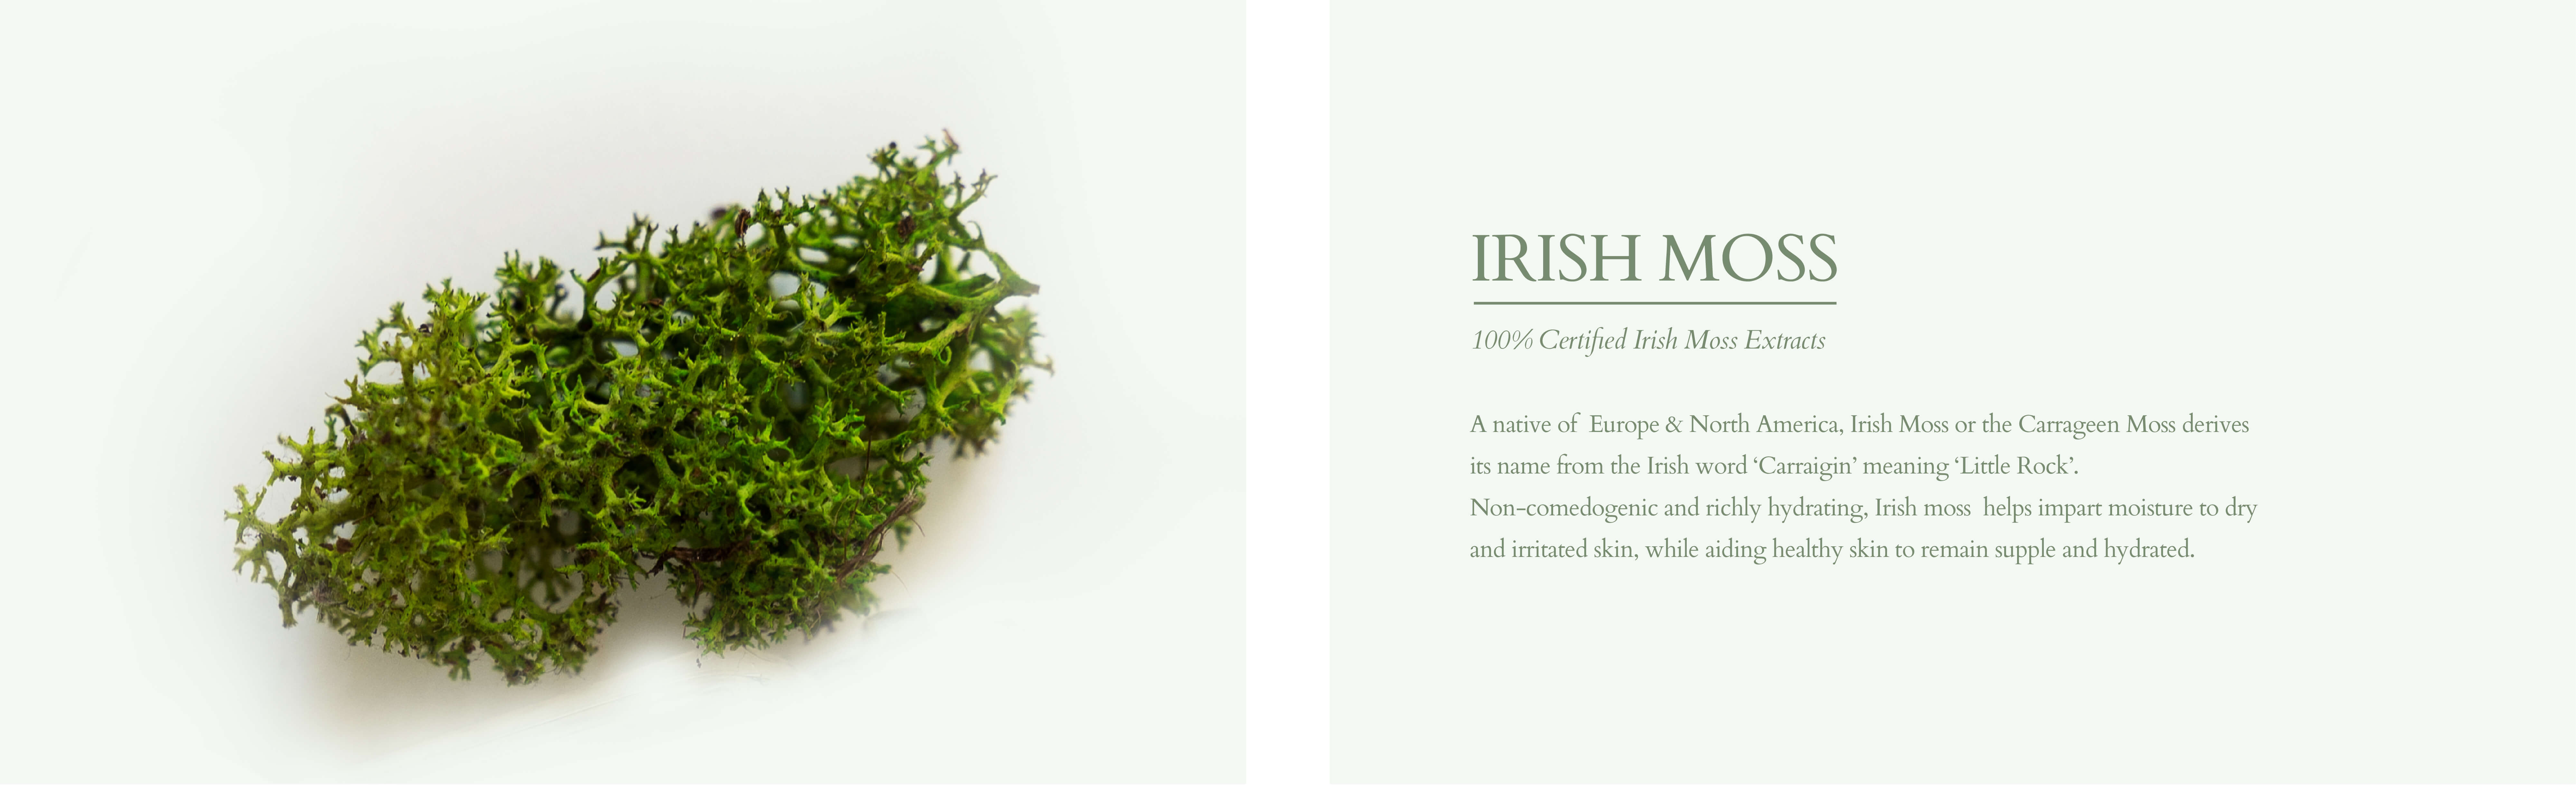 Irish moss for dry and irritated skin